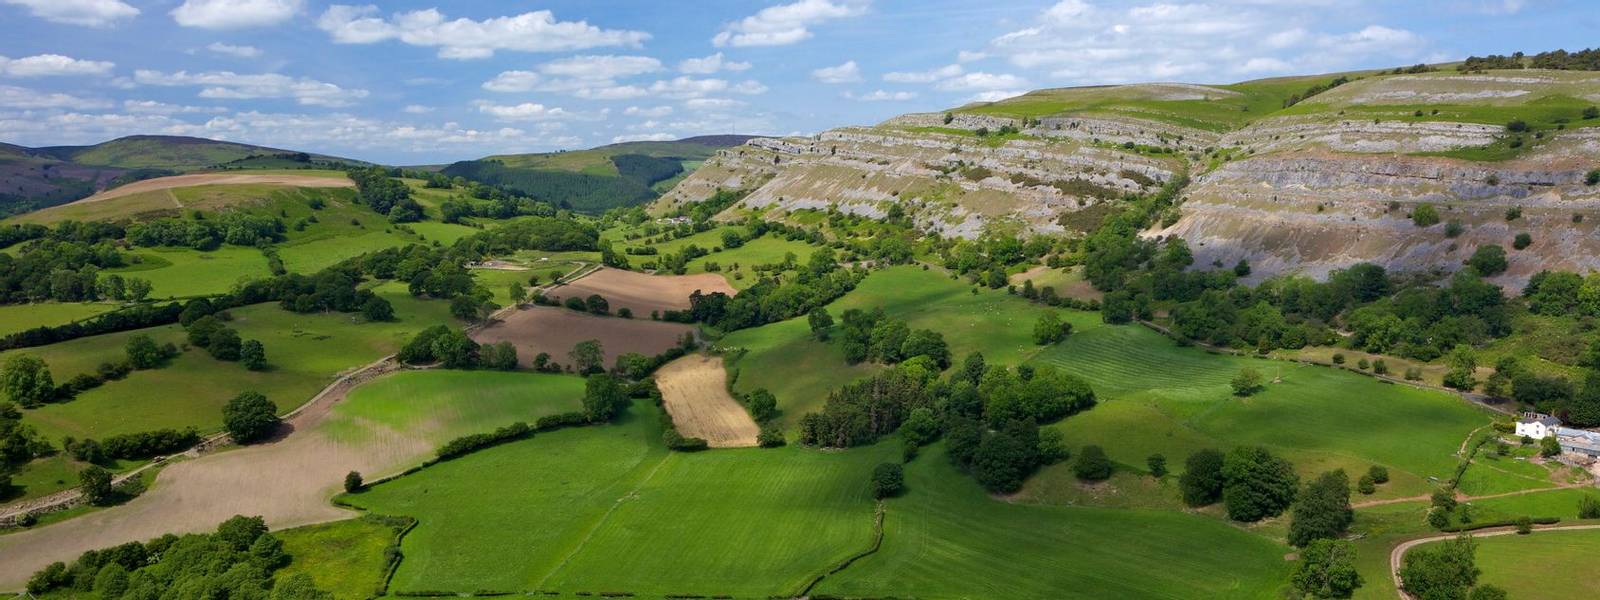 View towards limestone escarpment of Creigiau Eglwyseg, from Castell Dinas Bran, Llangollen, Denbighshire, Wales, United Kin…